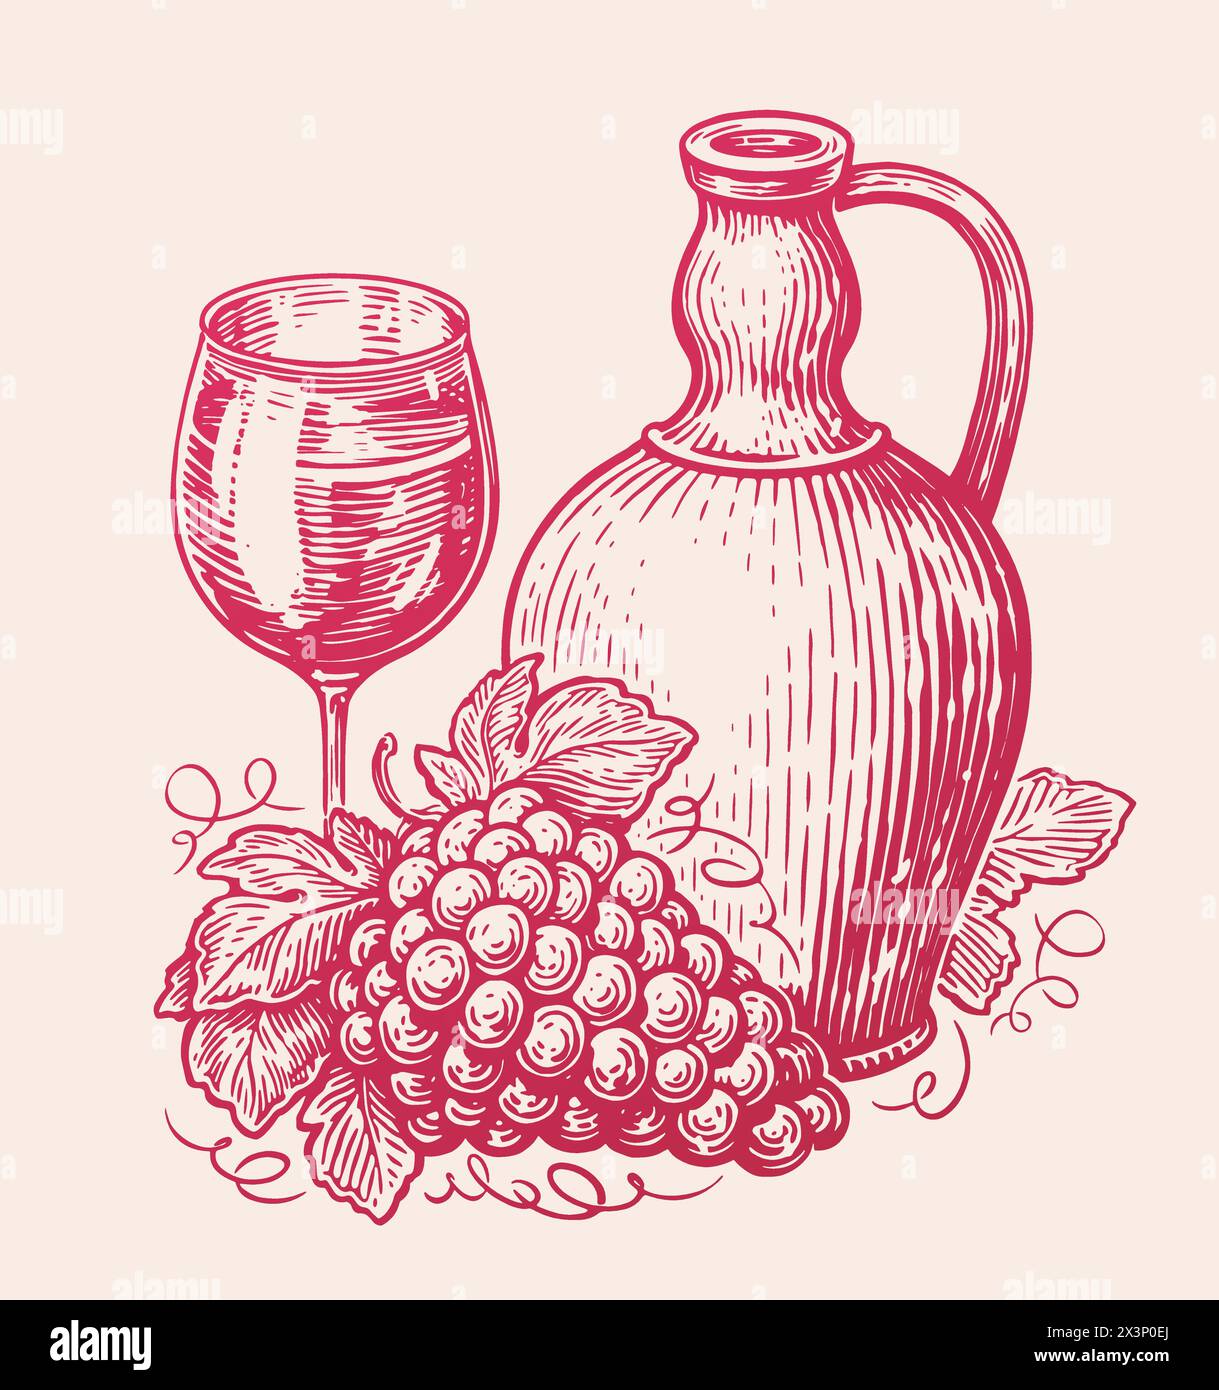 Pichet de boisson de vin avec verre et bouquet de raisins. Esquisse de natures mortes. Illustration vectorielle dans le style de dessin artistique Illustration de Vecteur